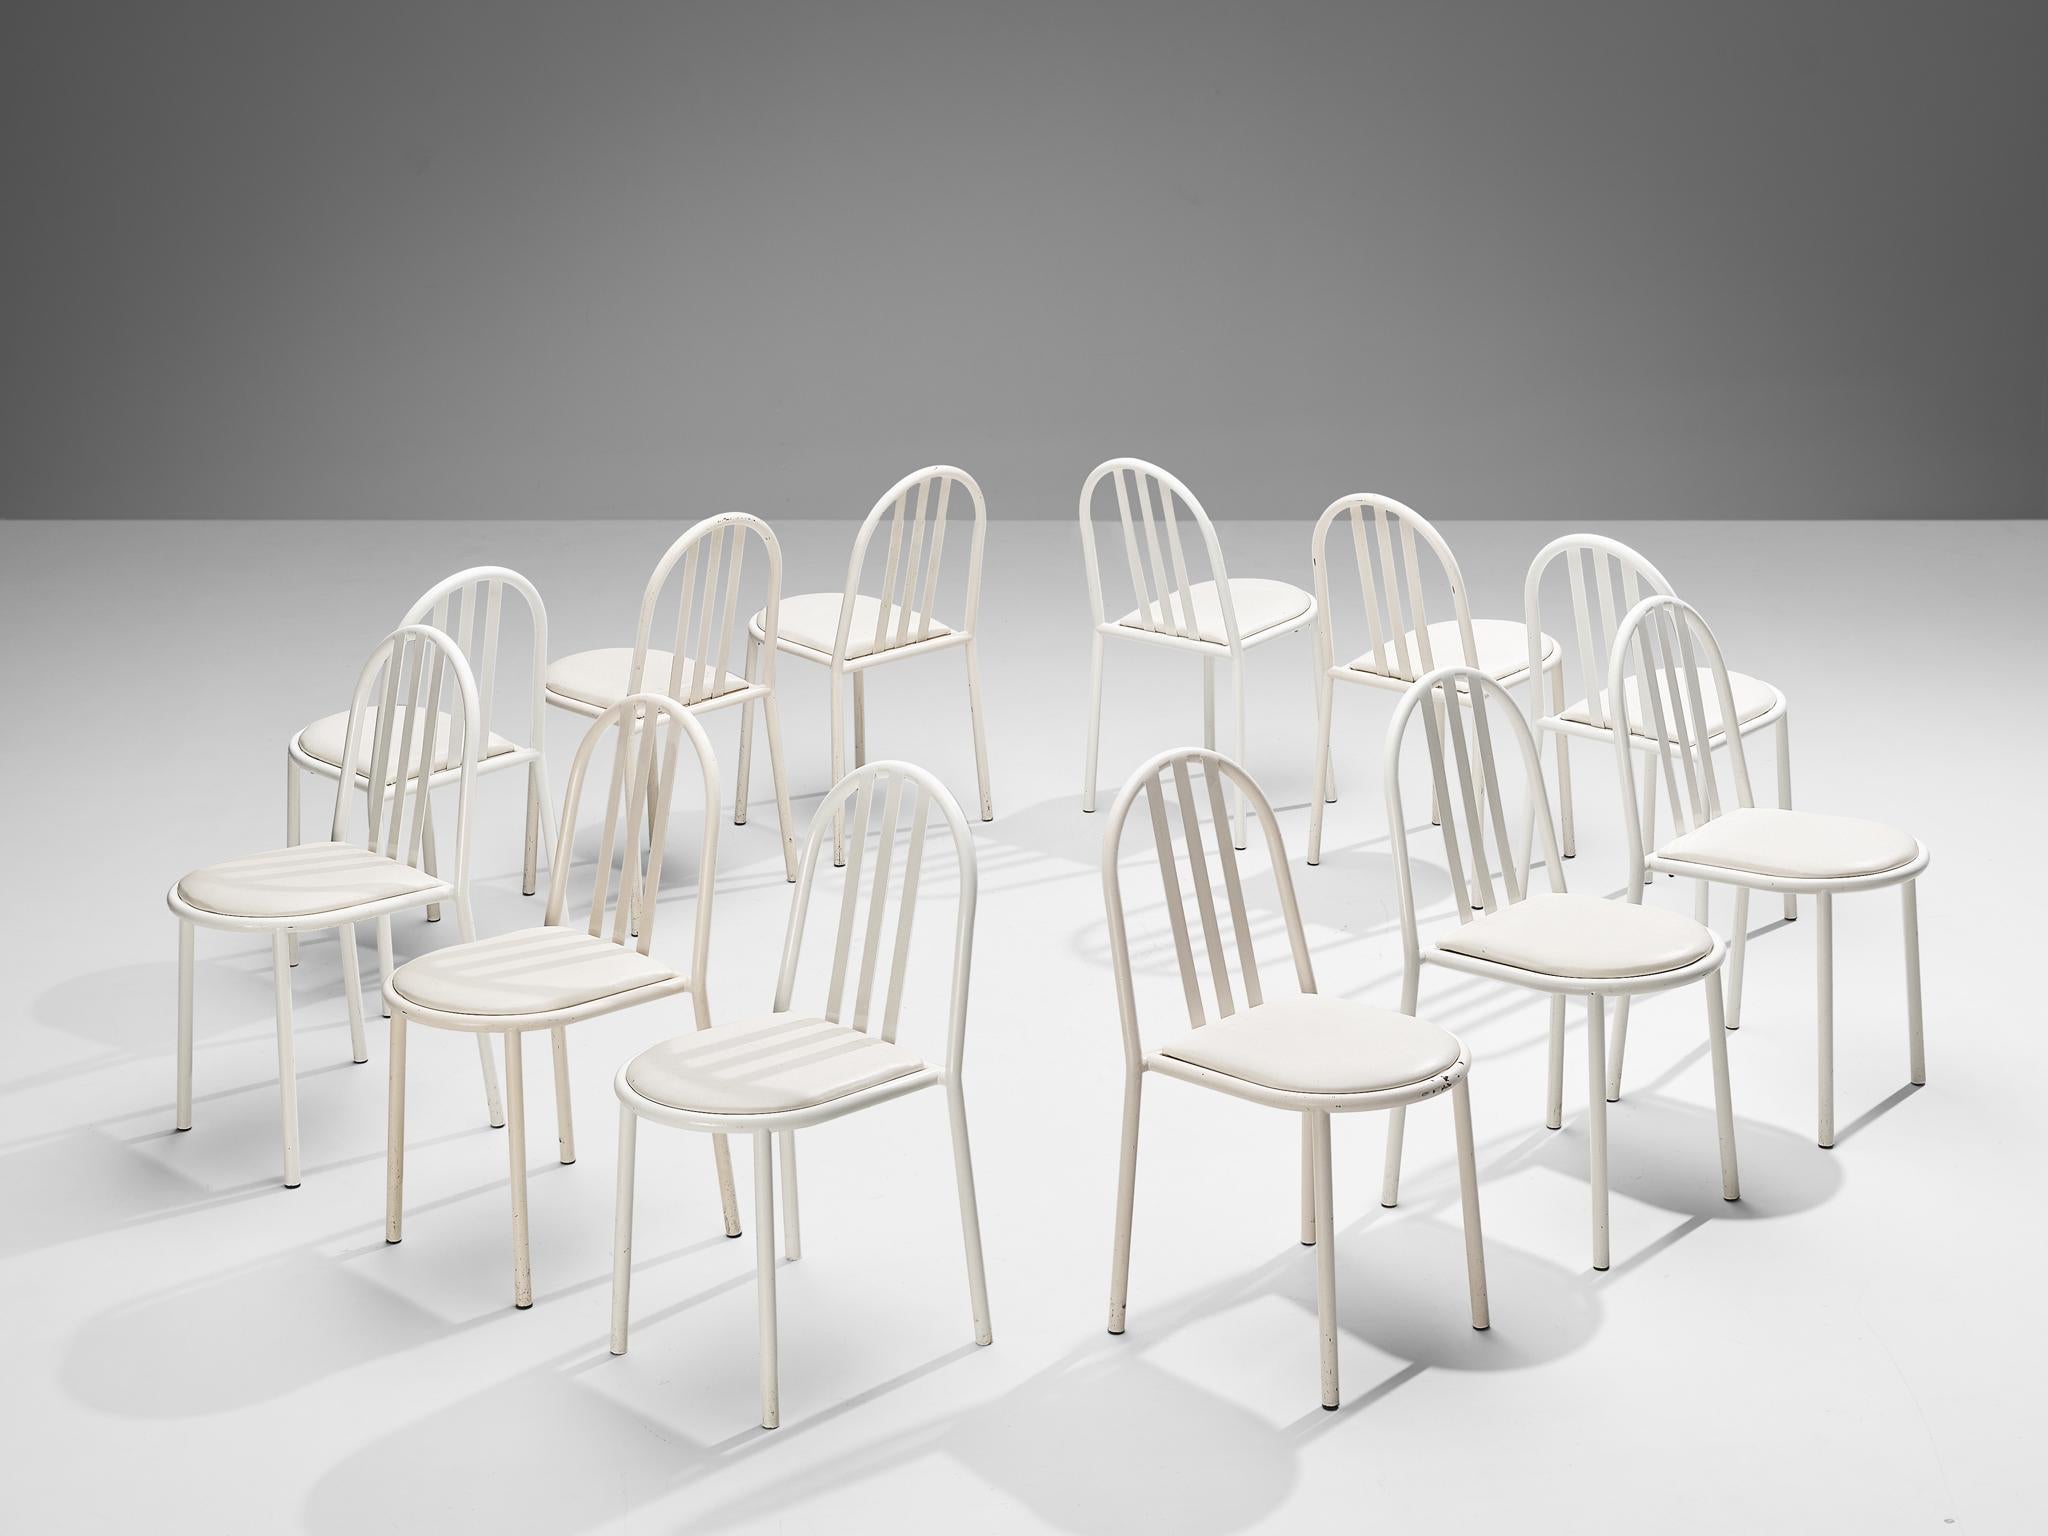 Robert Mallet Stevens pour Stevens designs, ensemble de douze chaises de salle à manger, métal laqué et similicuir, France, design 1928, production ultérieure

Ensemble de chaises tubulaires laquées blanches conçues par l'un des maîtres de